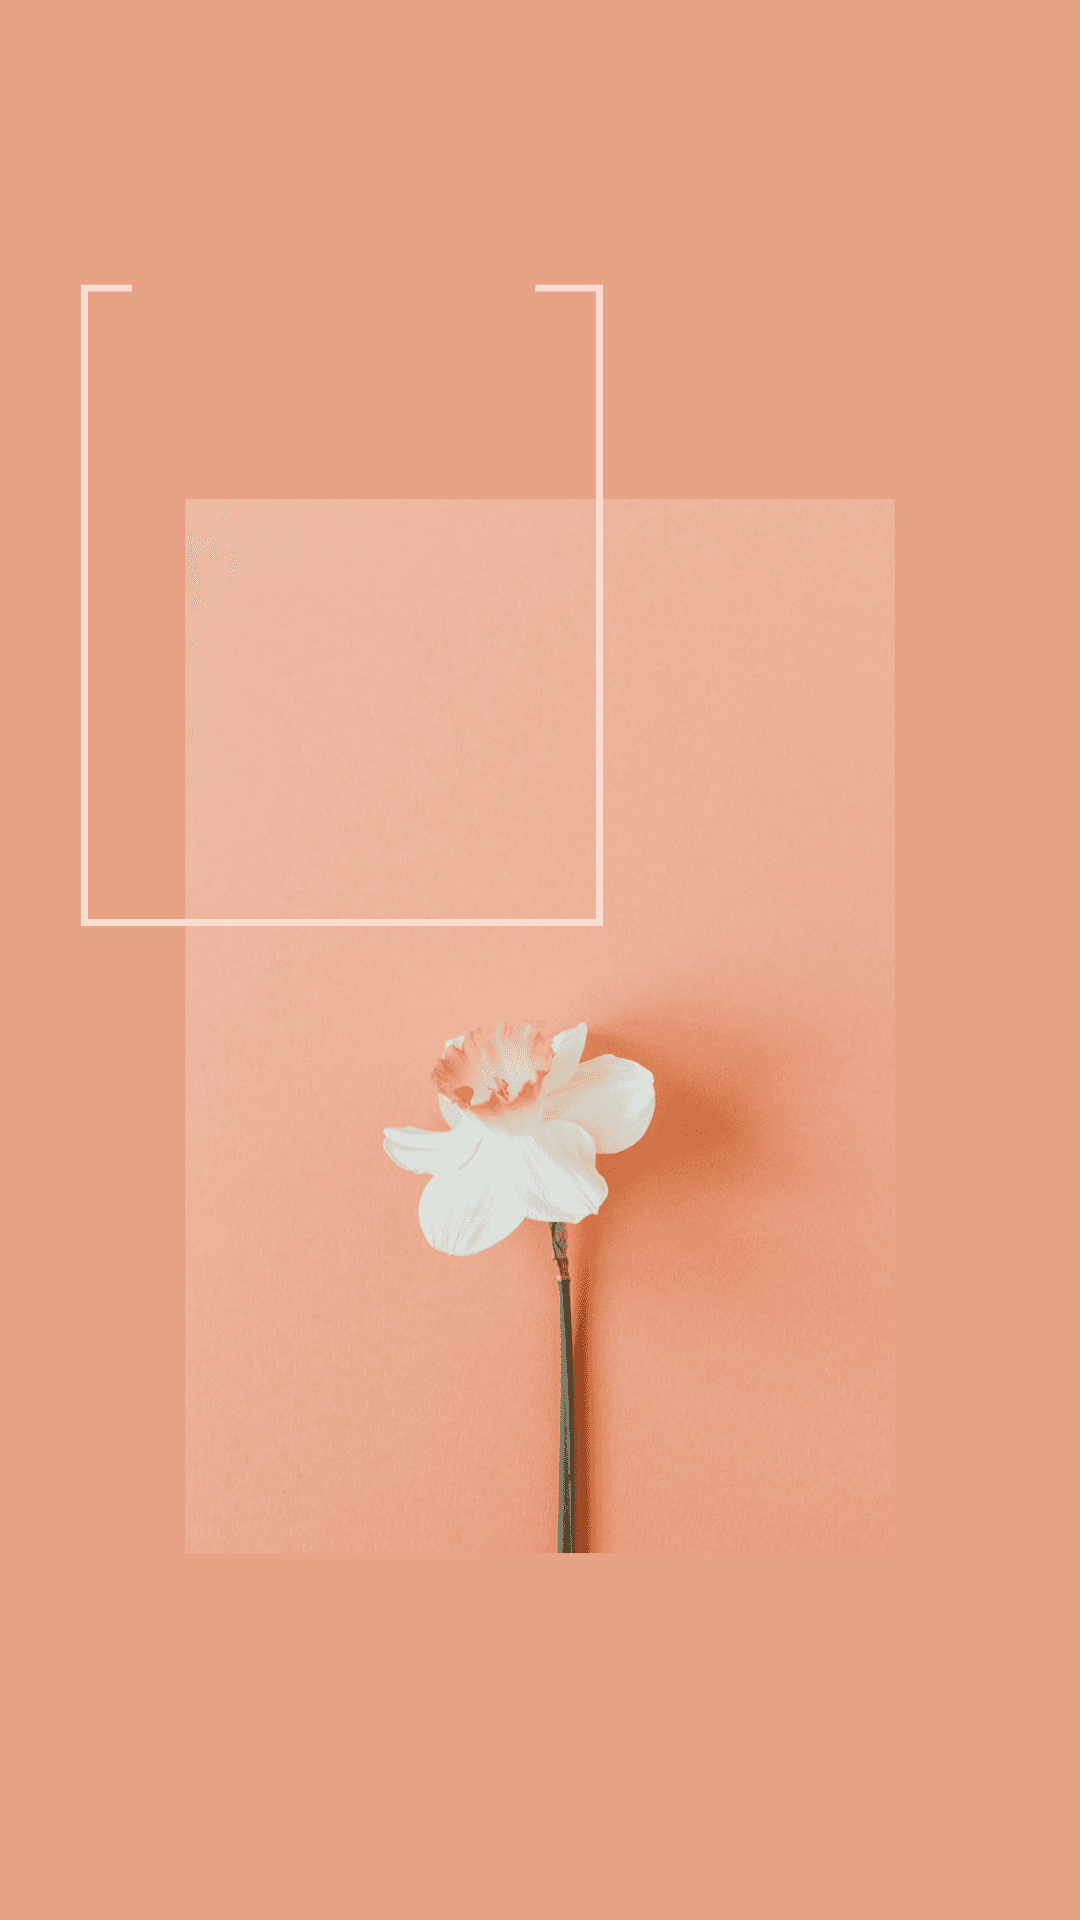 Hintergrundim Blumen-design